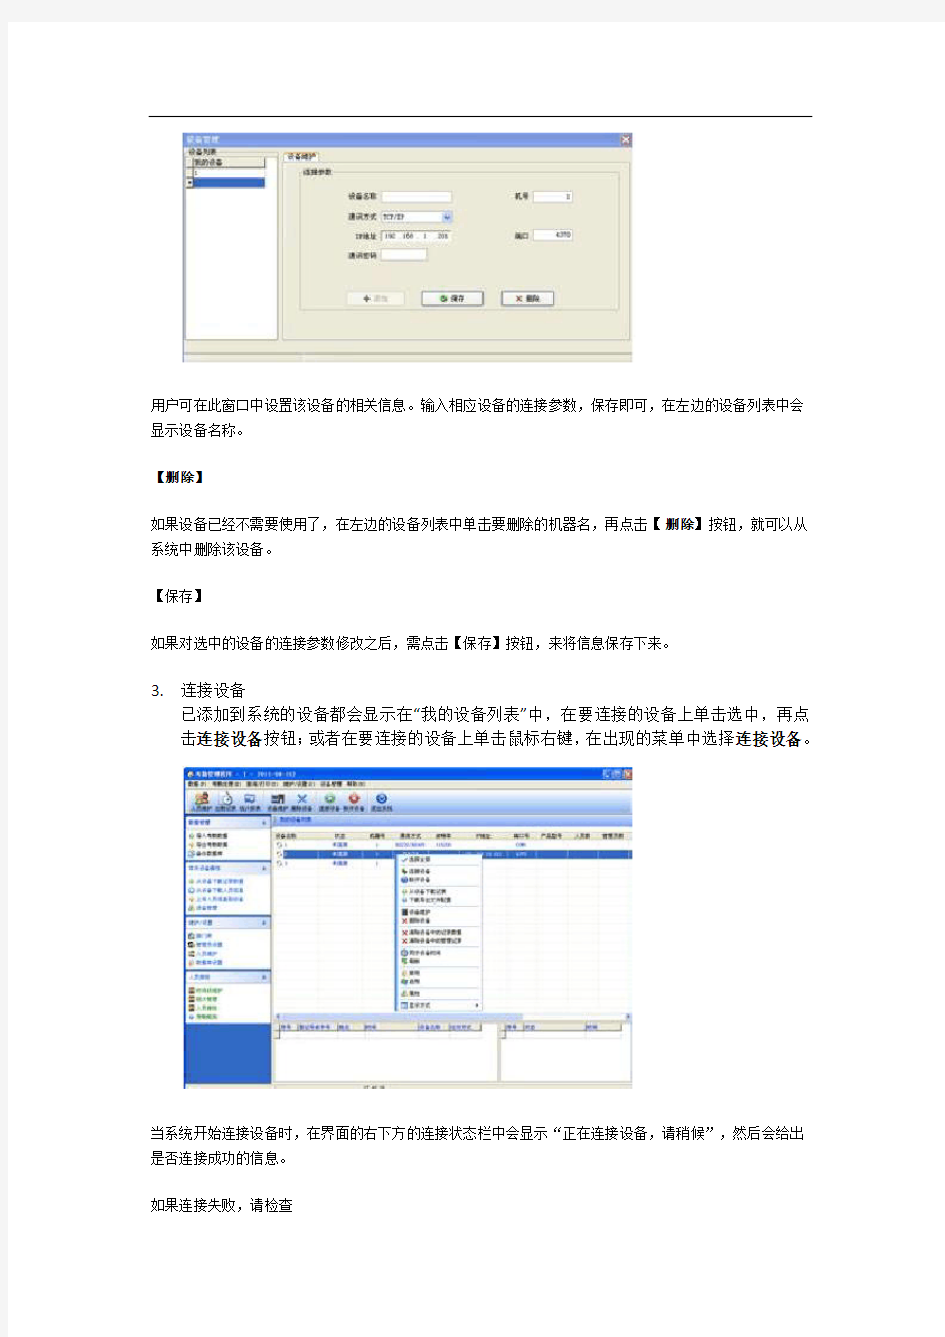 中控ZKTime5.0考勤管理系统使用说明书